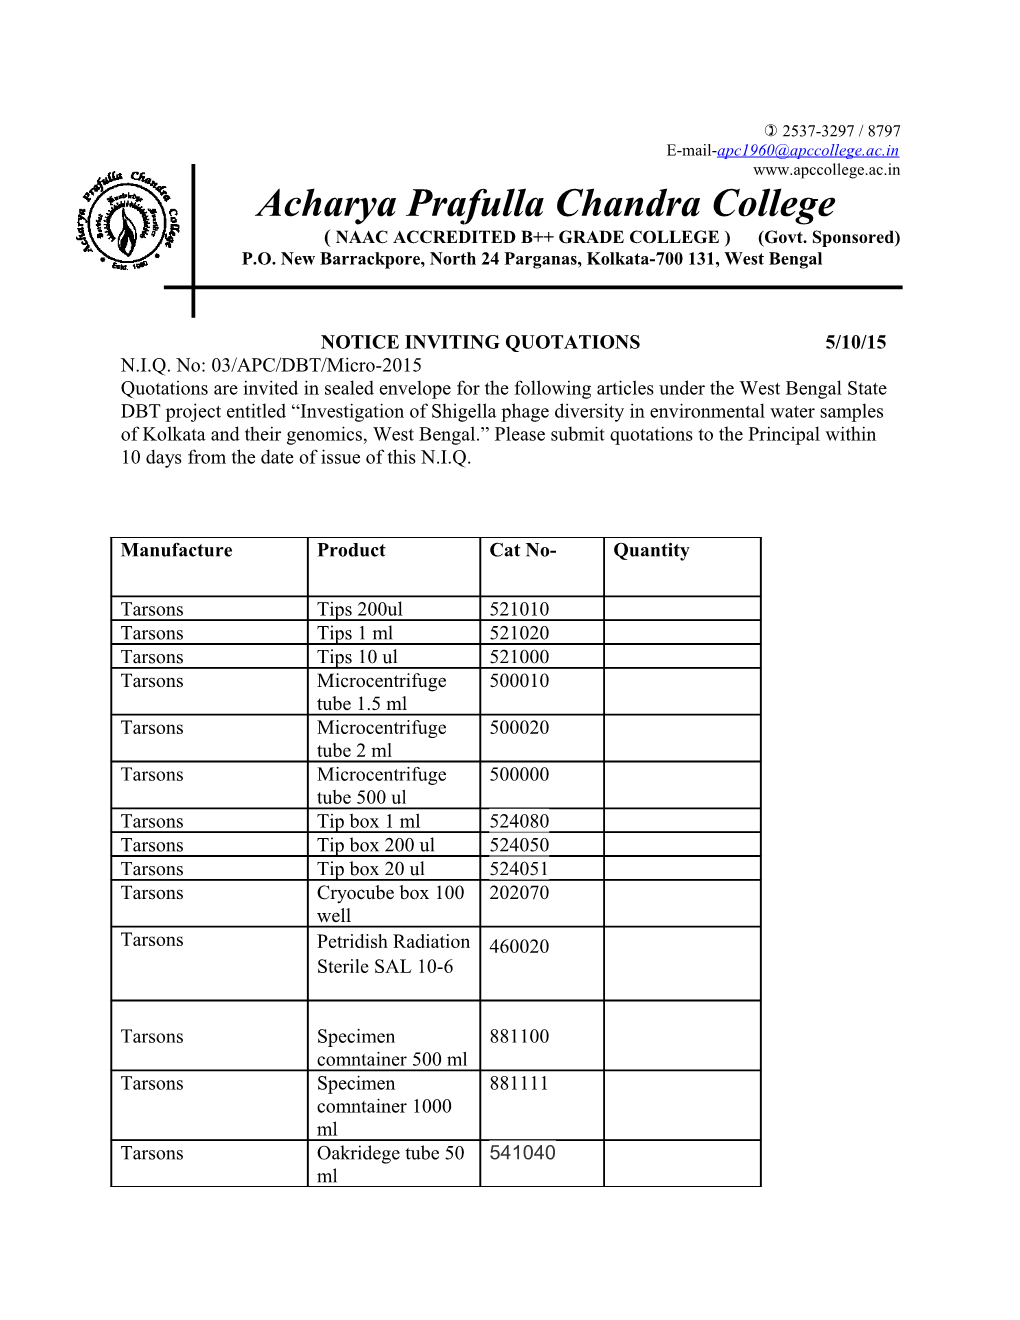 Acharya Prafulla Chandra College, New Barrackpore, North 24 Parganas